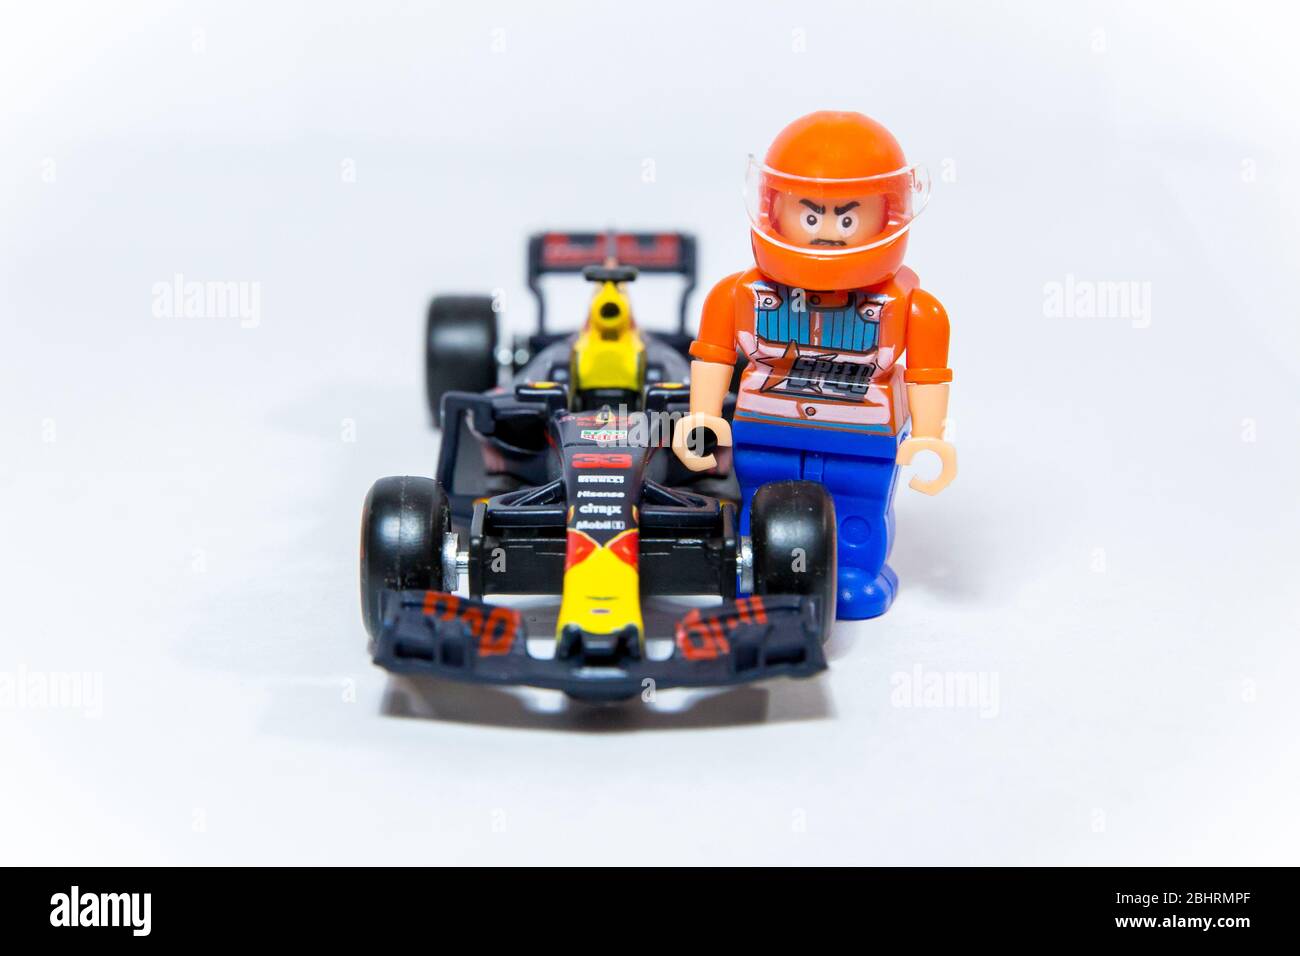 Bburago Red Bull Racing RB13 1:43 model Formula One car. Max ...